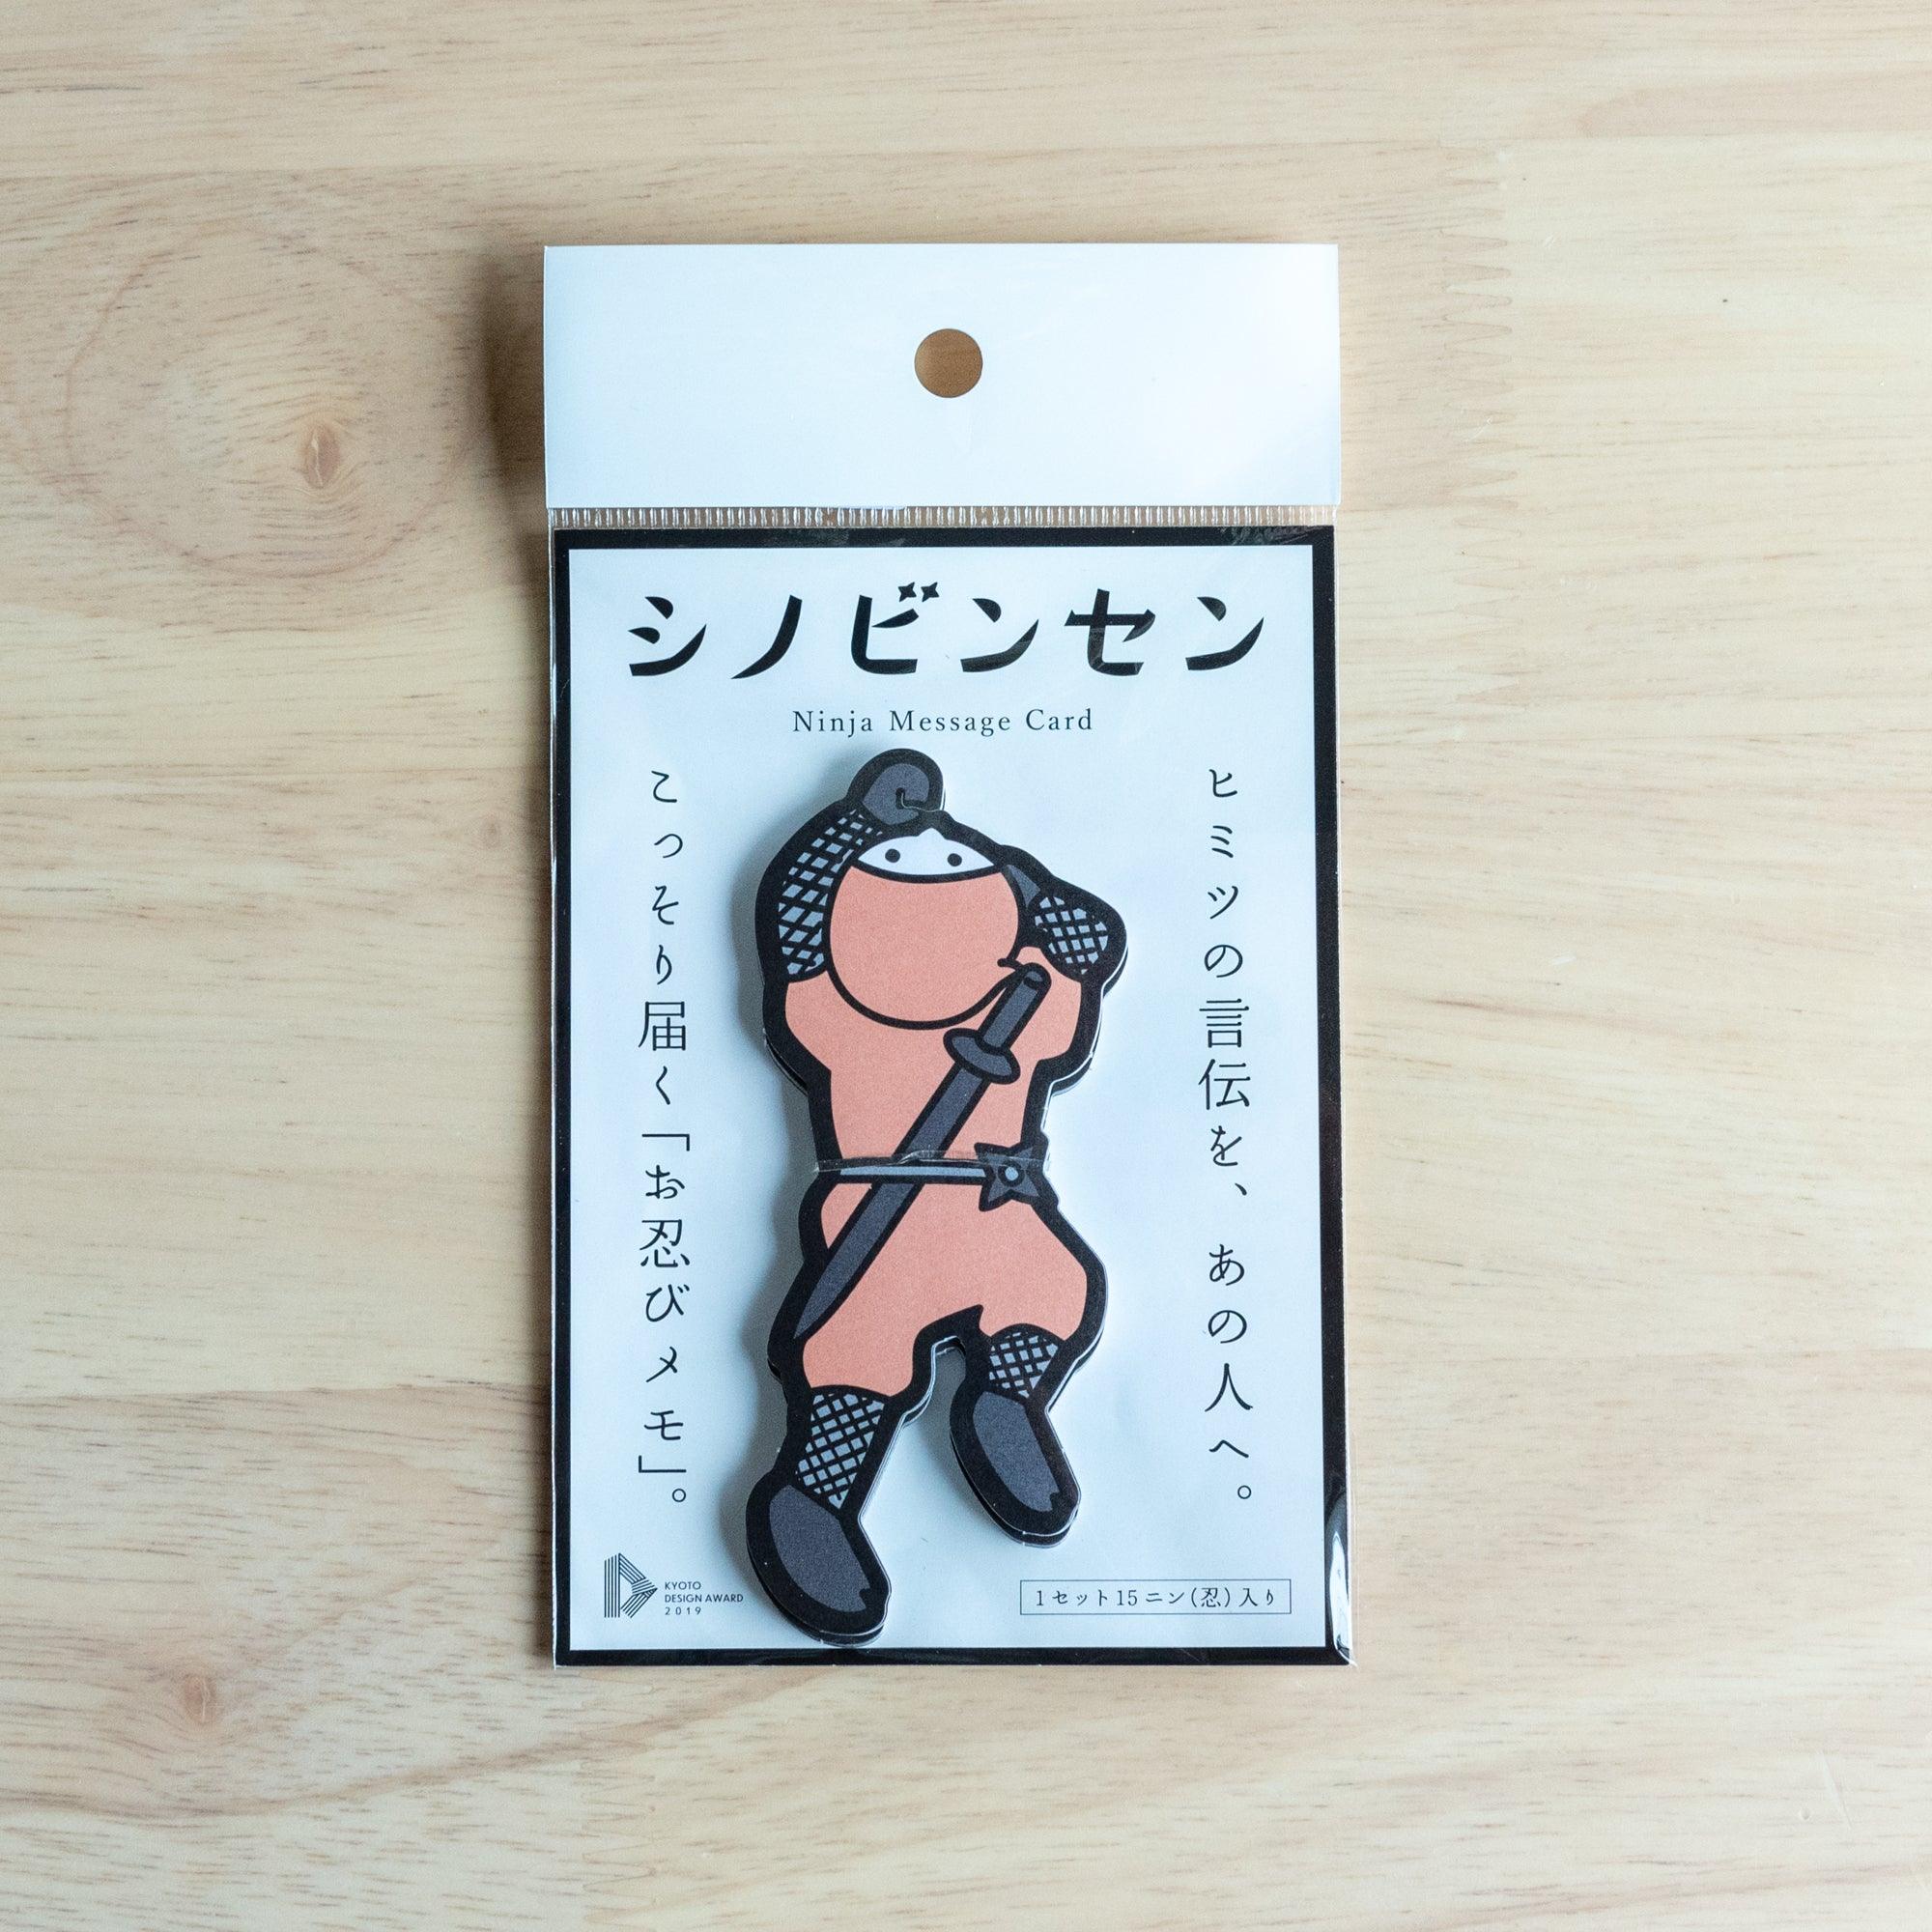 Pink Ninja Yuzen Washi Note Card - Shogado - Komorebi Stationery